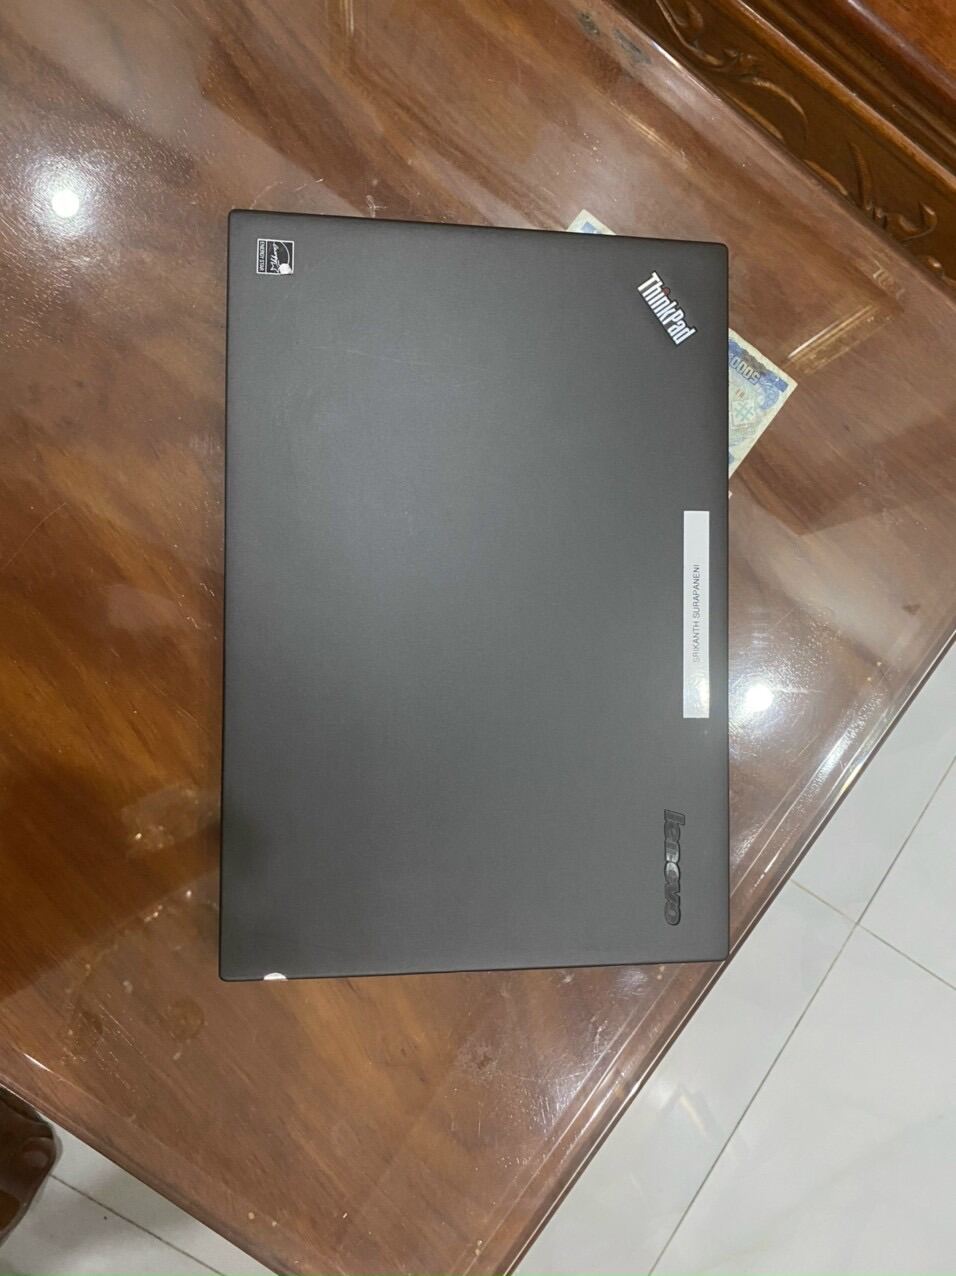 Bảng giá Mỏng manh đều đẹp 😄 ➪ Lenovo ThinkPad X1 Carbon Gen3 ➪ Cpu I7-5600 ➪ Ram 8gb ➪ Ssd 256gb ➪ 14 inch 👀 Phong Vũ